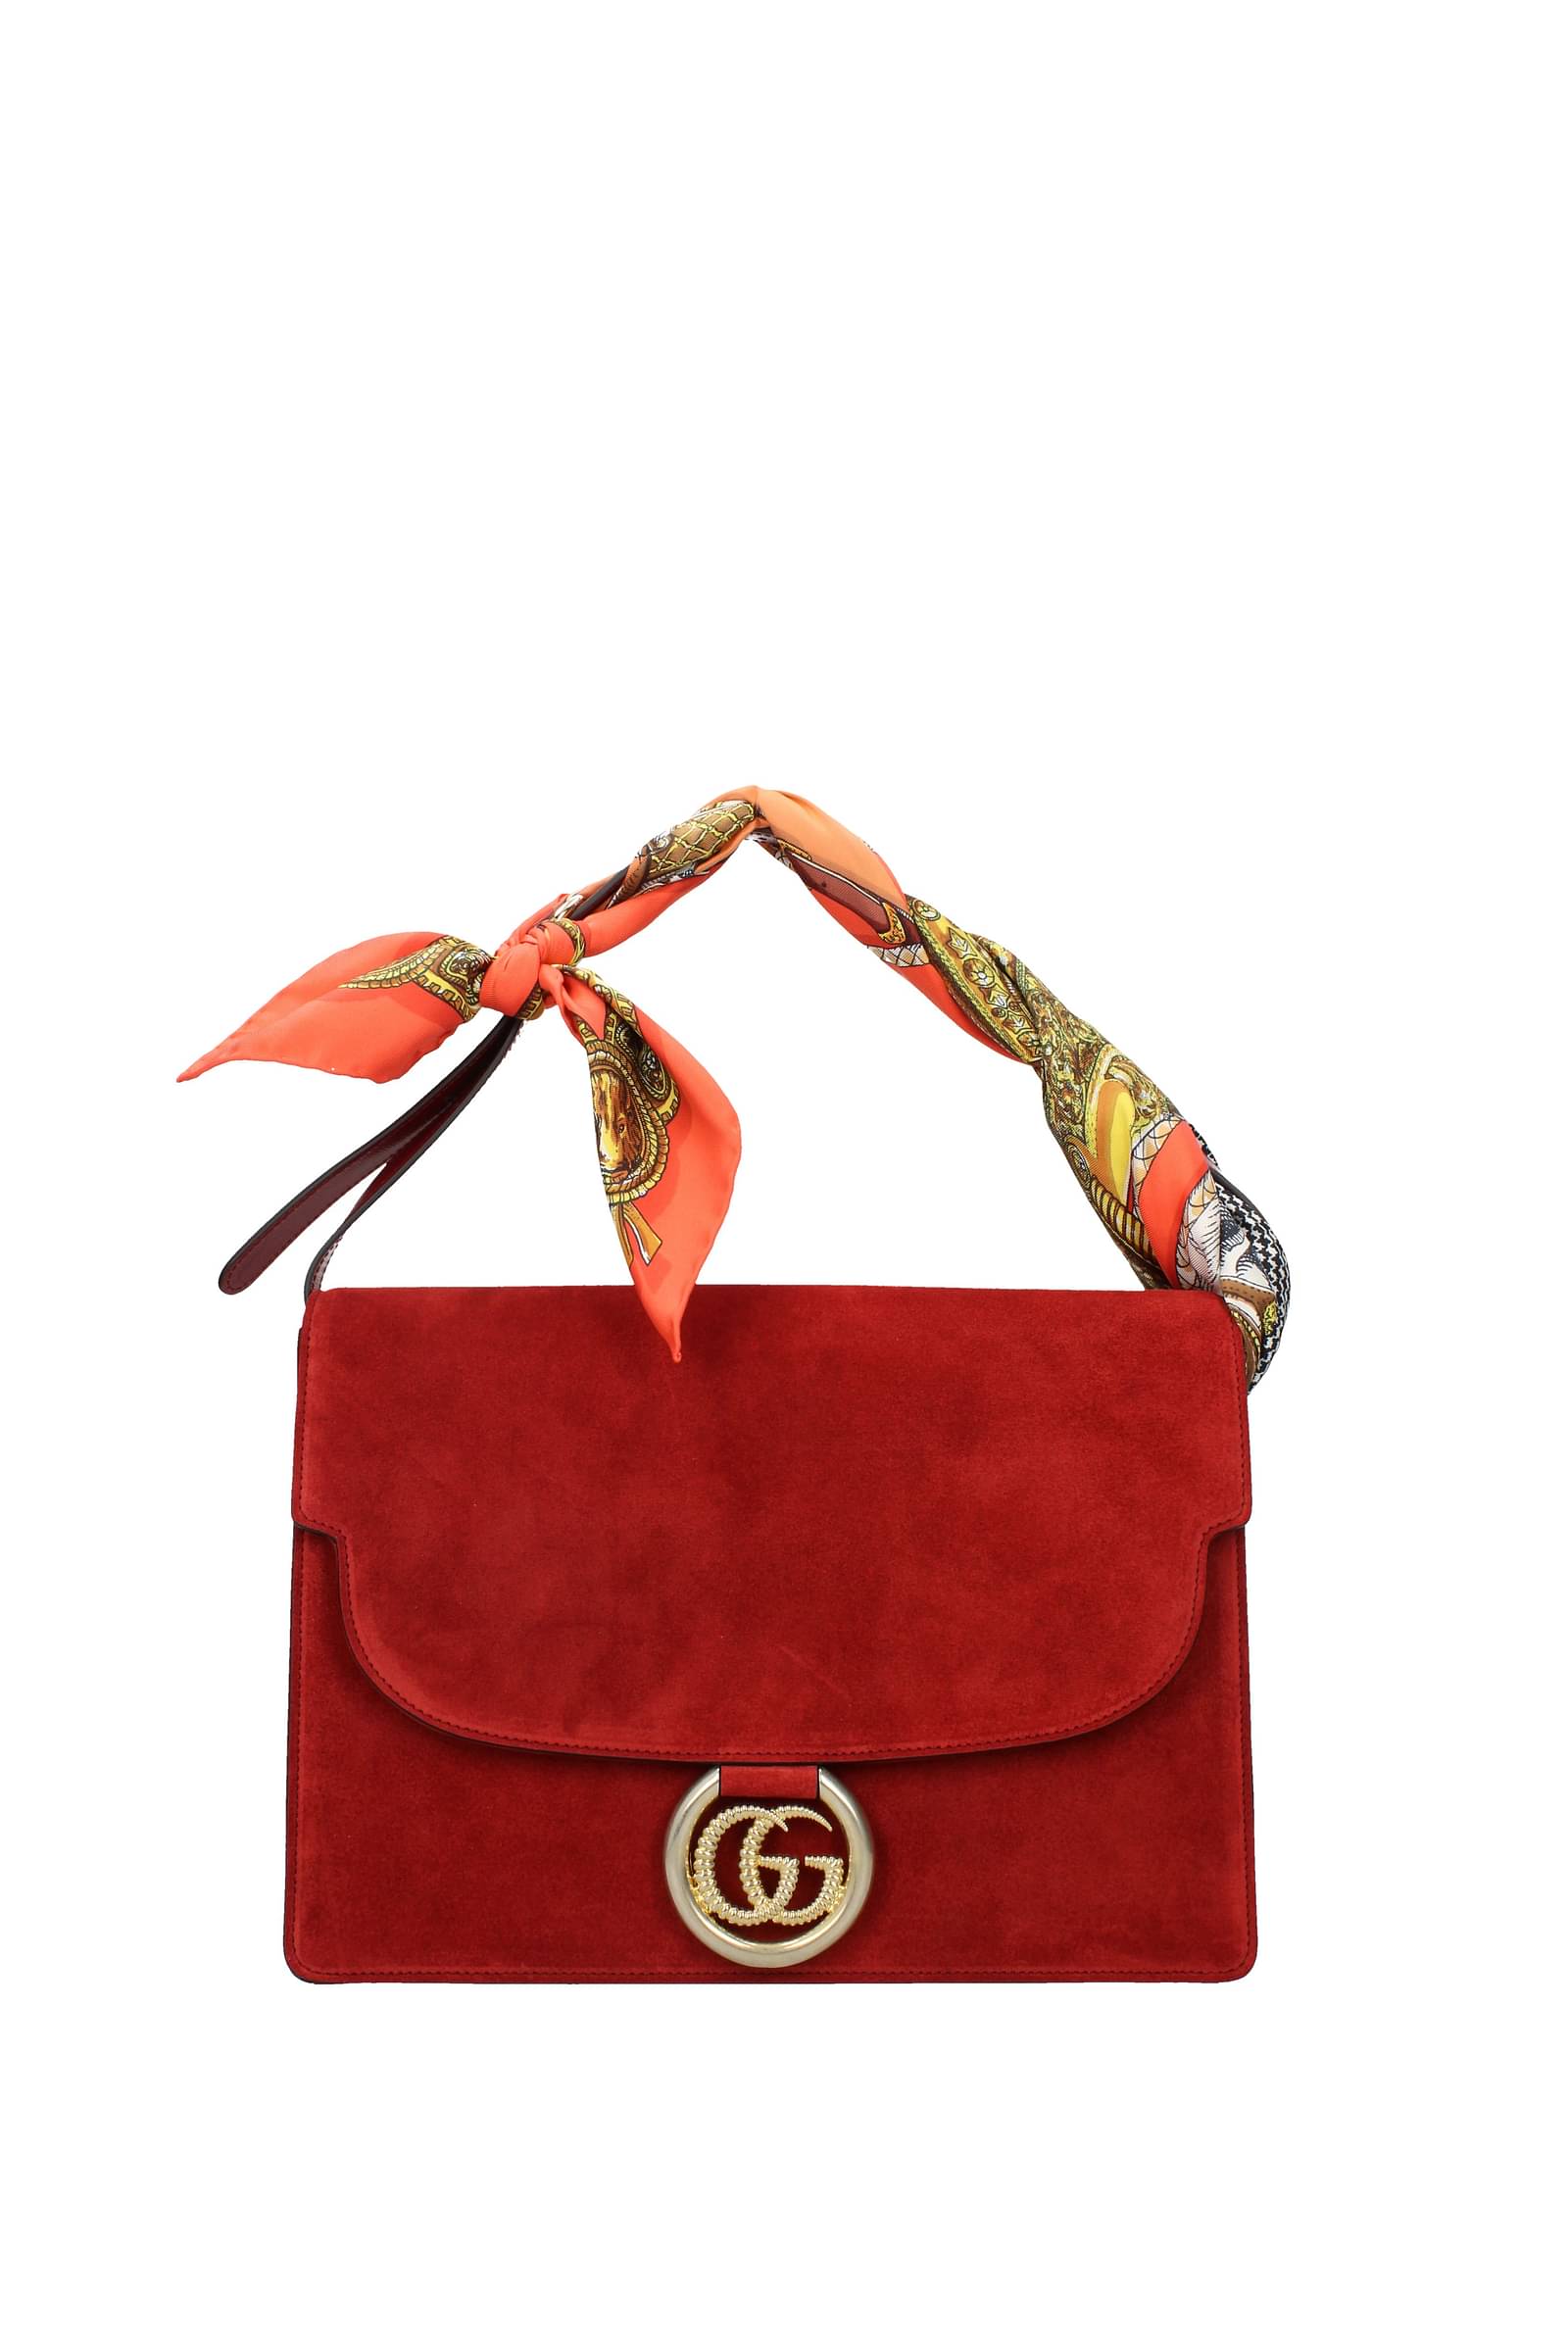 gucci handbag online